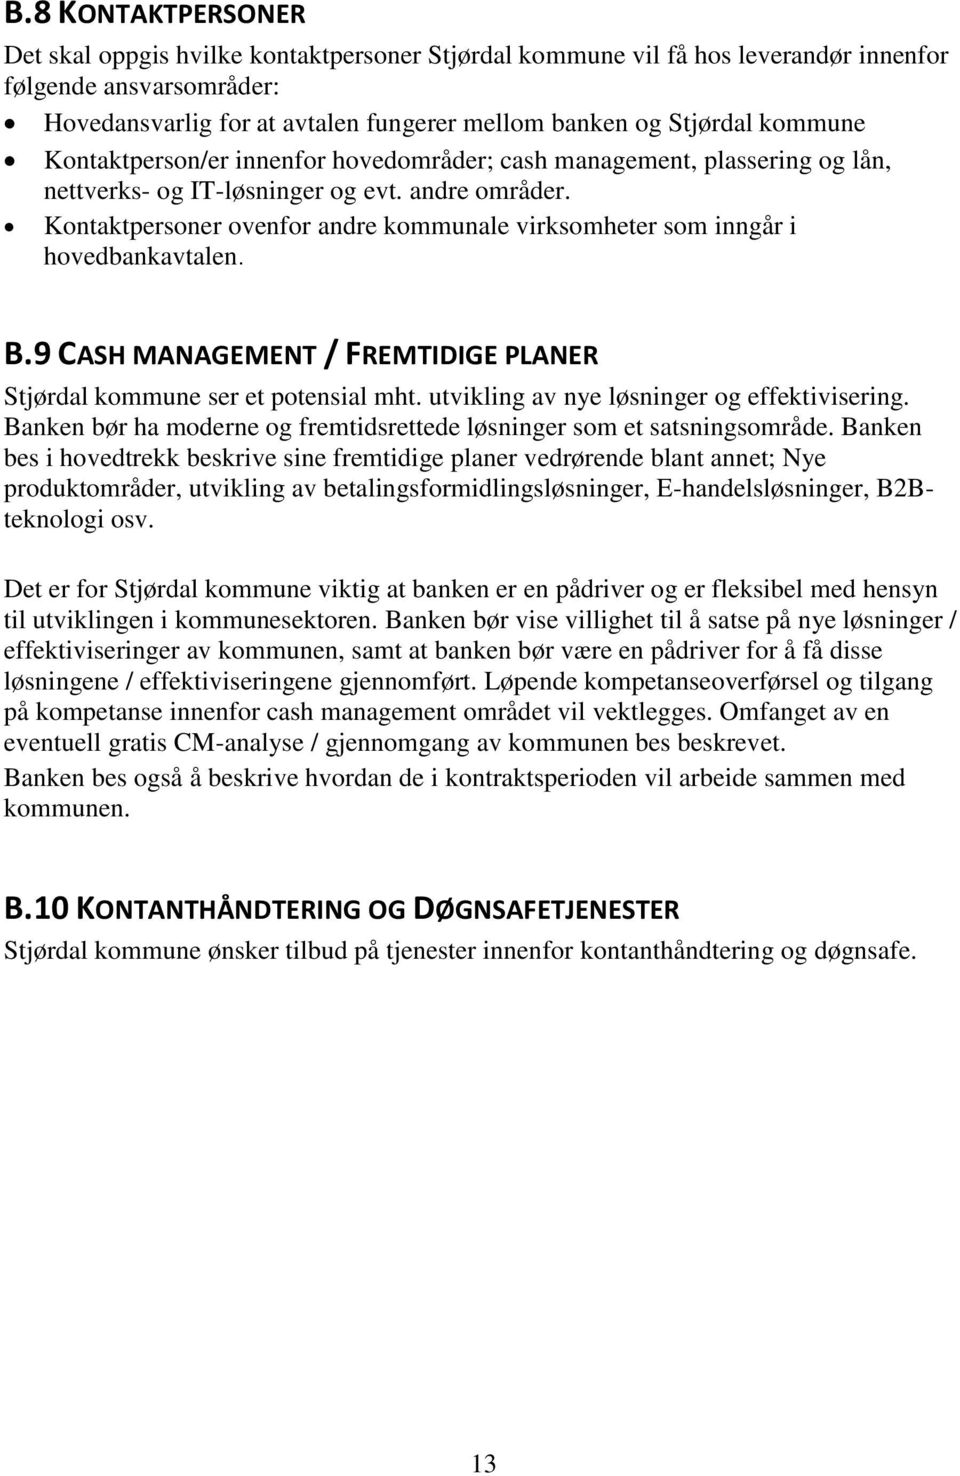 Kontaktpersoner ovenfor andre kommunale virksomheter som inngår i hovedbankavtalen. B.9 CASH MANAGEMENT / FREMTIDIGE PLANER Stjørdal kommune ser et potensial mht.